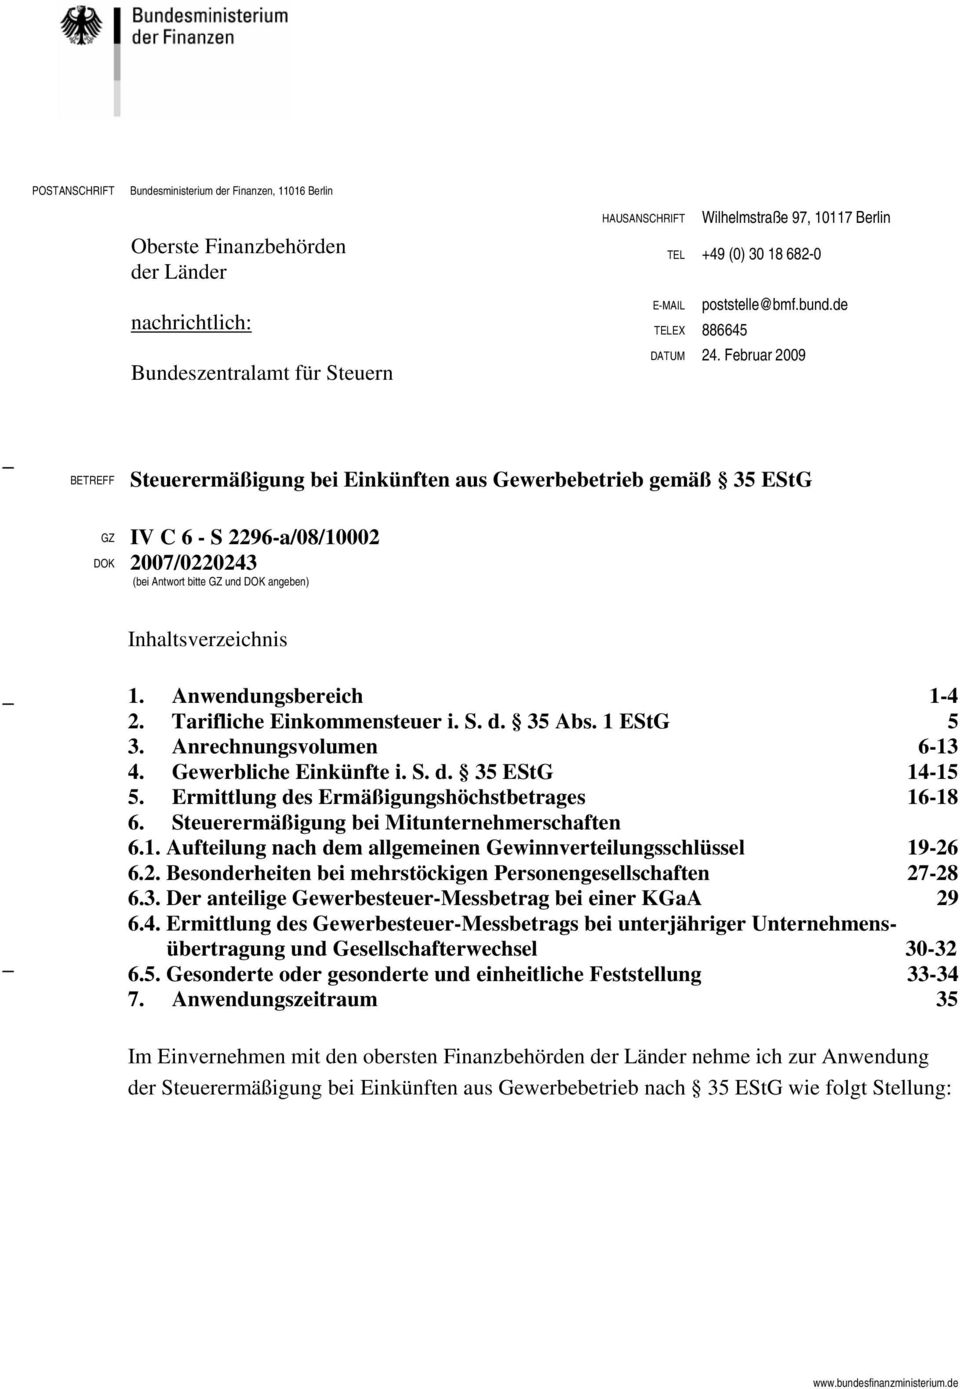 Februar 2009 BETREFF Steuerermäßigung bei Einkünften aus Gewerbebetrieb gemäß 35 EStG GZ IV C 6 - S 2296-a/08/10002 DOK 2007/0220243 (bei Antwort bitte GZ und DOK angeben) Inhaltsverzeichnis 1.